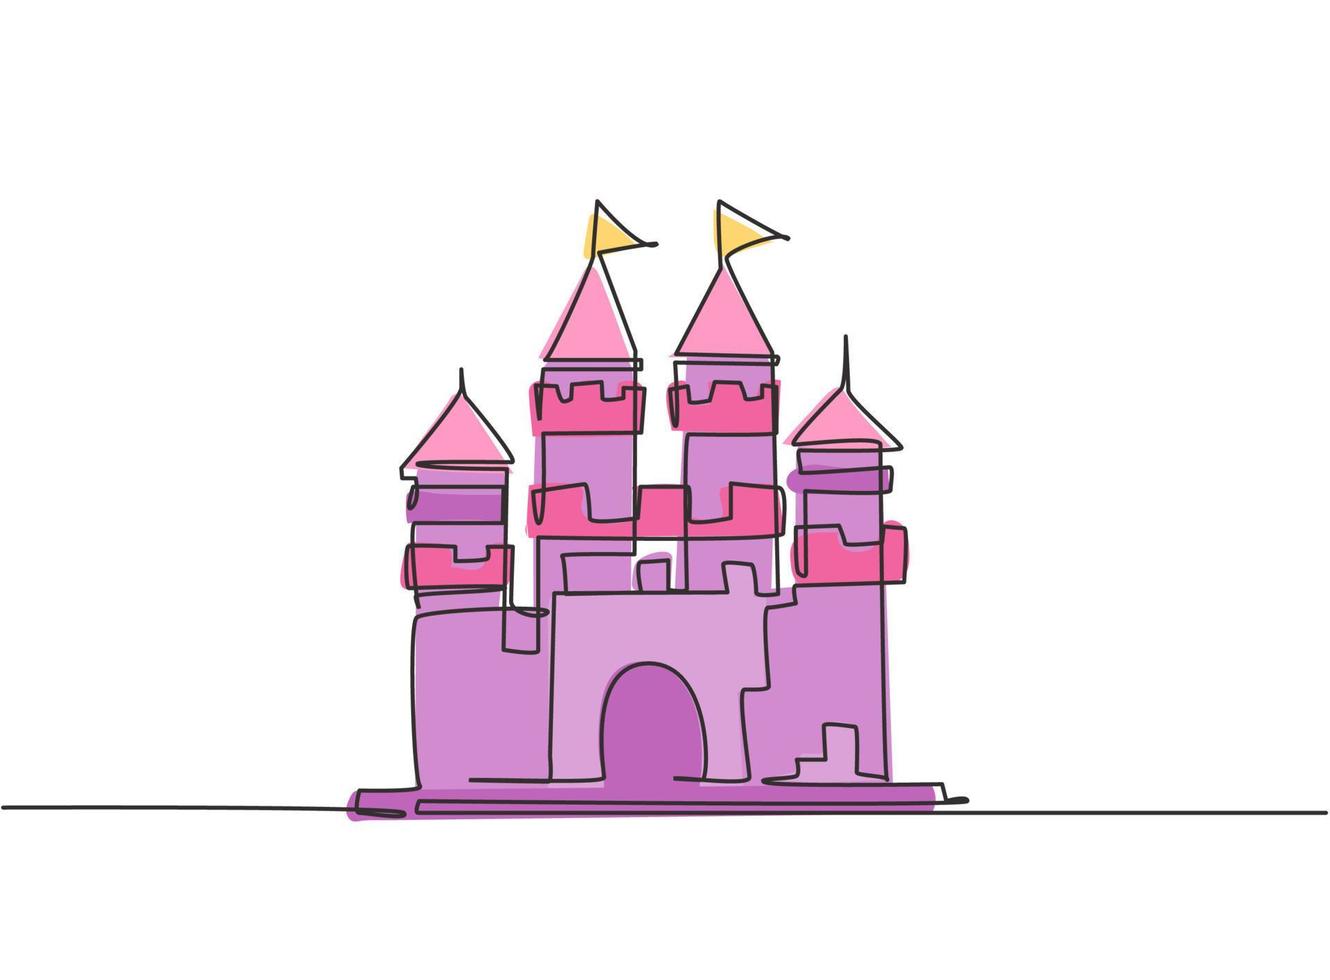 enda enradsteckning av slott i en nöjespark med fyra torn och två flaggor på. ett fort som innehåller en atmosfär i en saga. kontinuerlig linje rita design grafisk vektor illustration